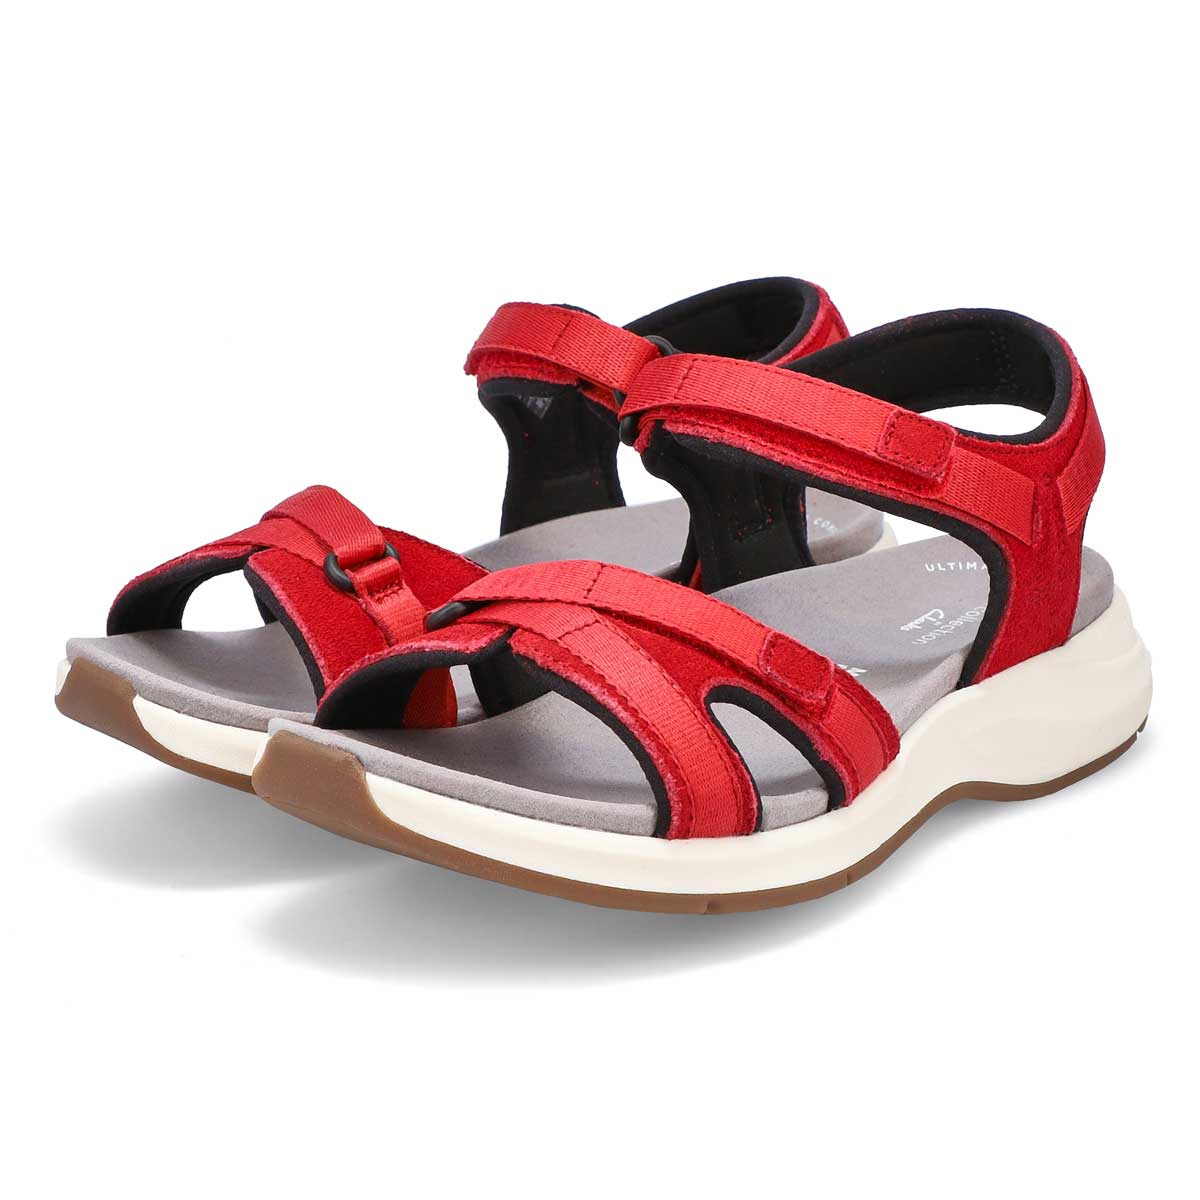 Women's Solan Drift Sandal - Red